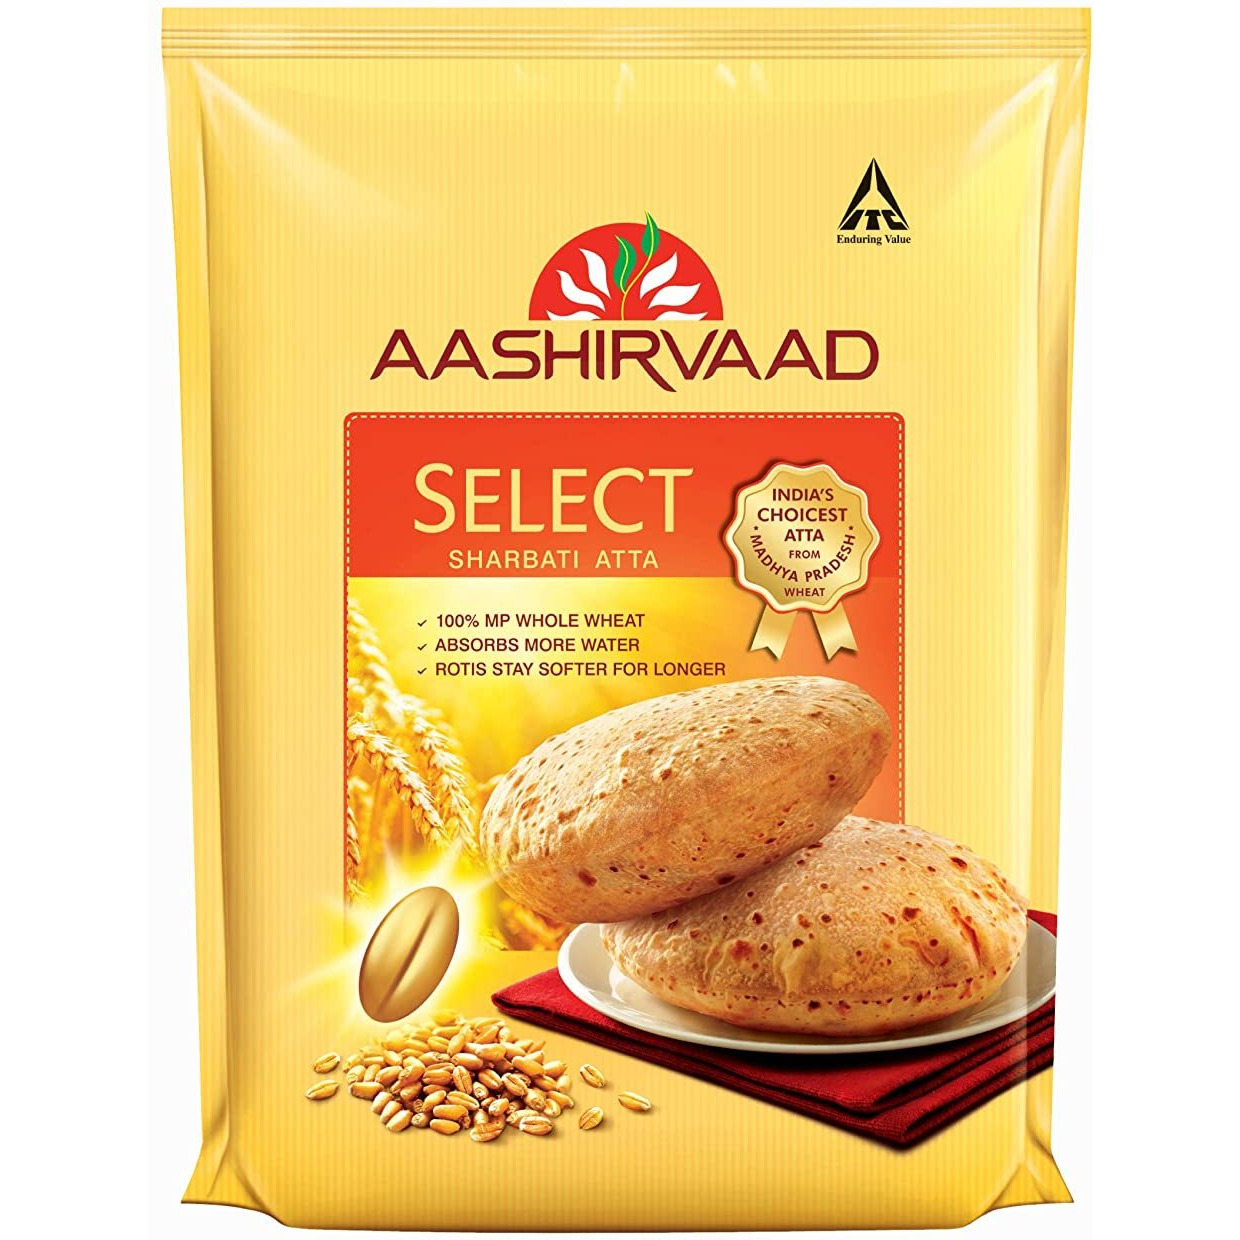 Ashirvaad Select Sharbati Atta Flour - 11Lb (5Kg)